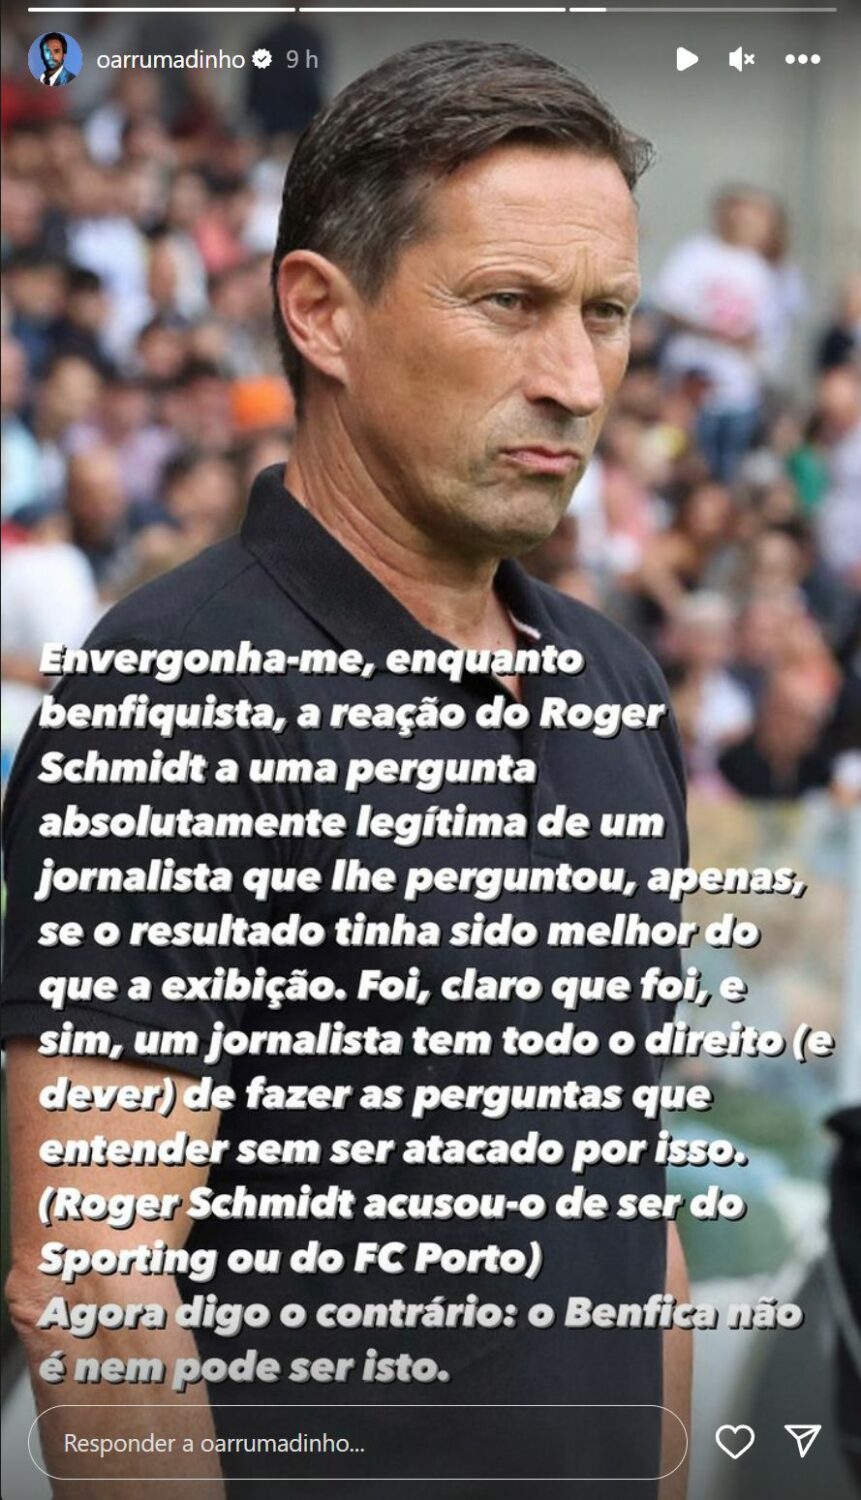 Ricardo Martins Pereira &#8220;envergonhado&#8221; com atitude de Roger Schmidt: &#8220;O Benfica não é nem pode ser isto&#8230;&#8221;